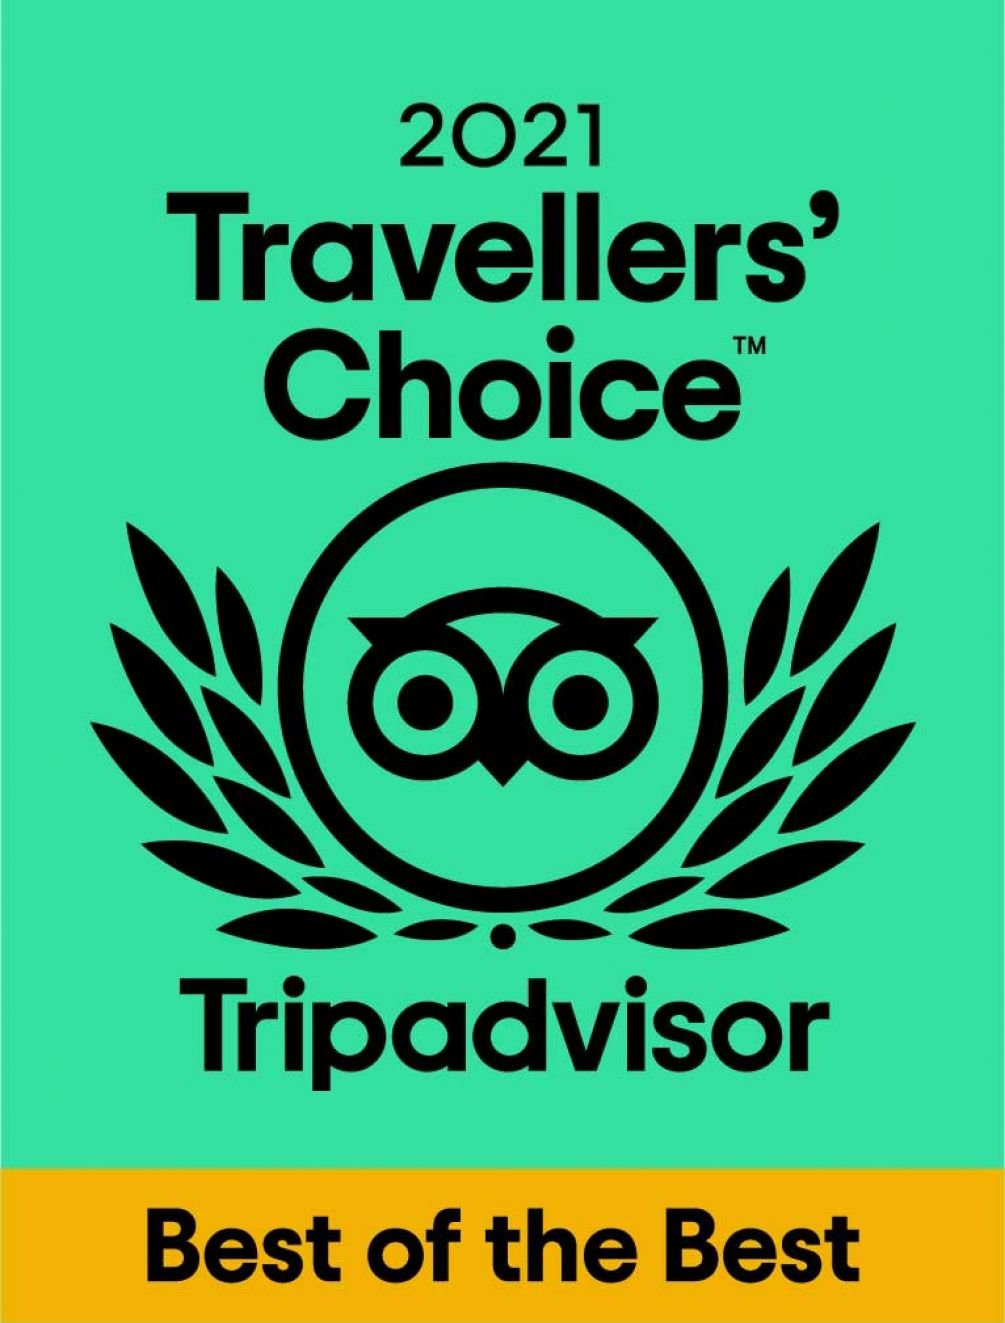 TripAdvisor-Best-of-the-Best-2021.jpg